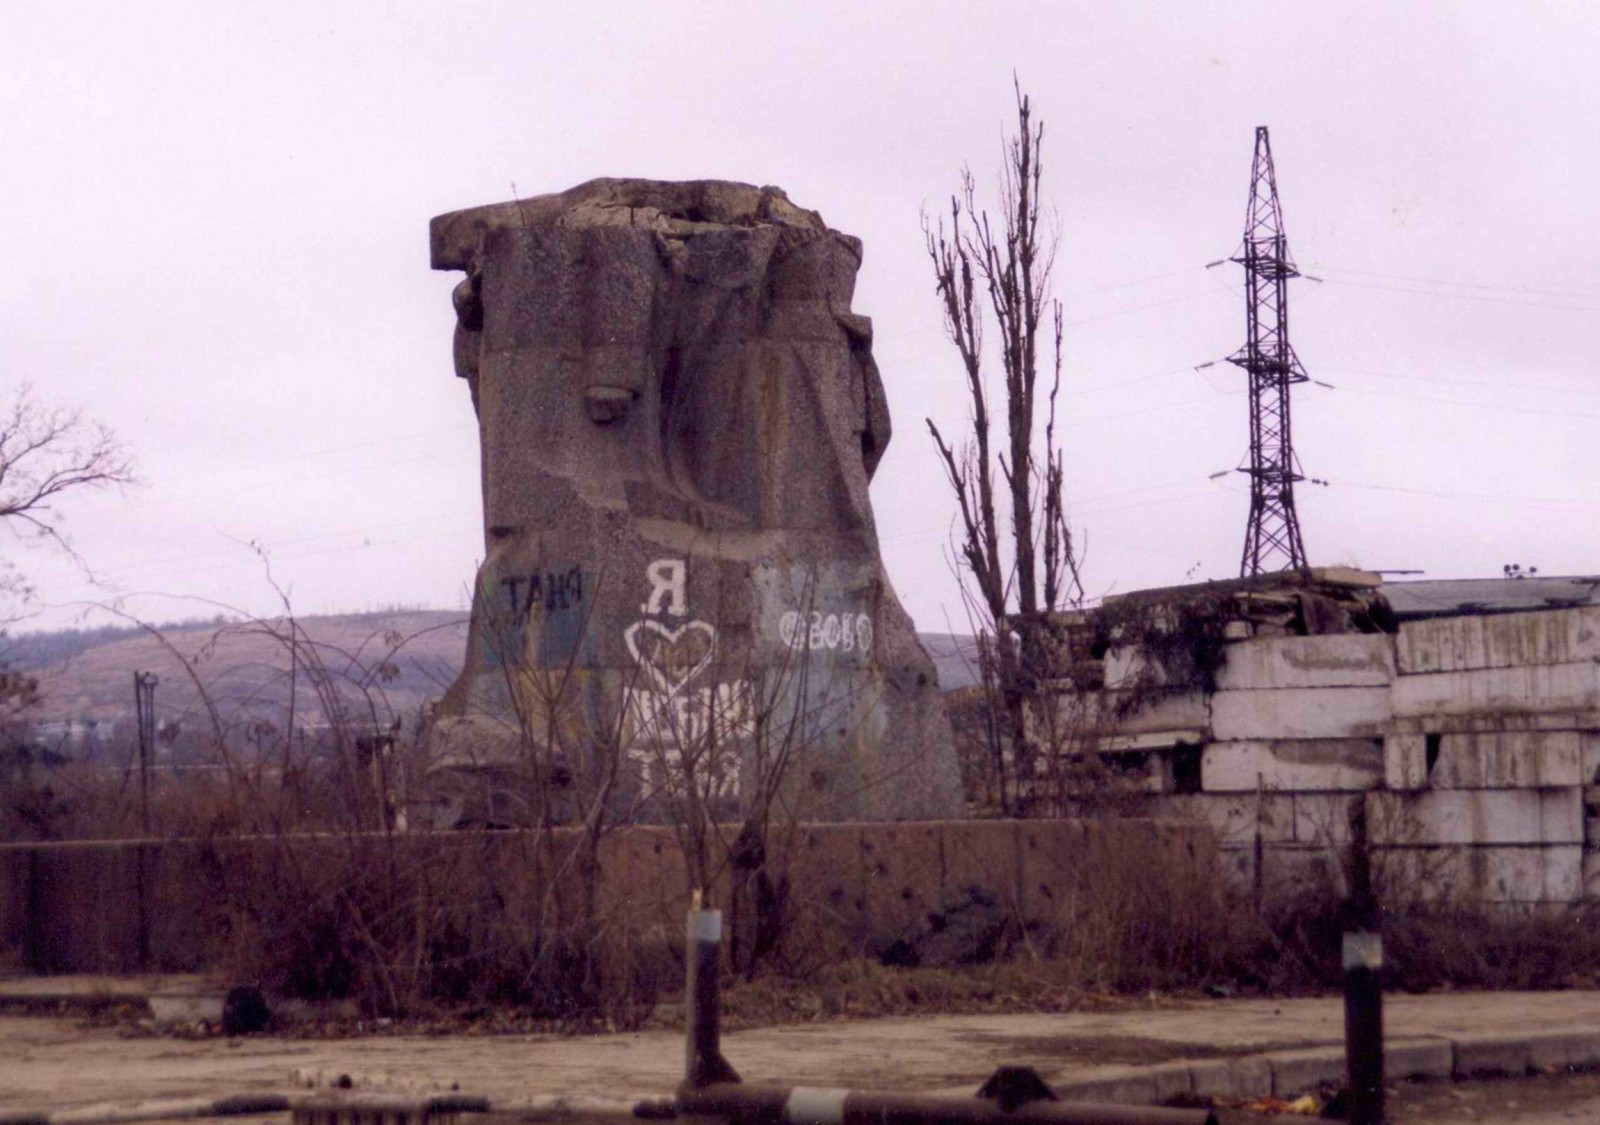 Разрушенный памятник а городе Грозном
Разрушенный памятник а городе Грозном
Ключевые слова: памятник,грозный